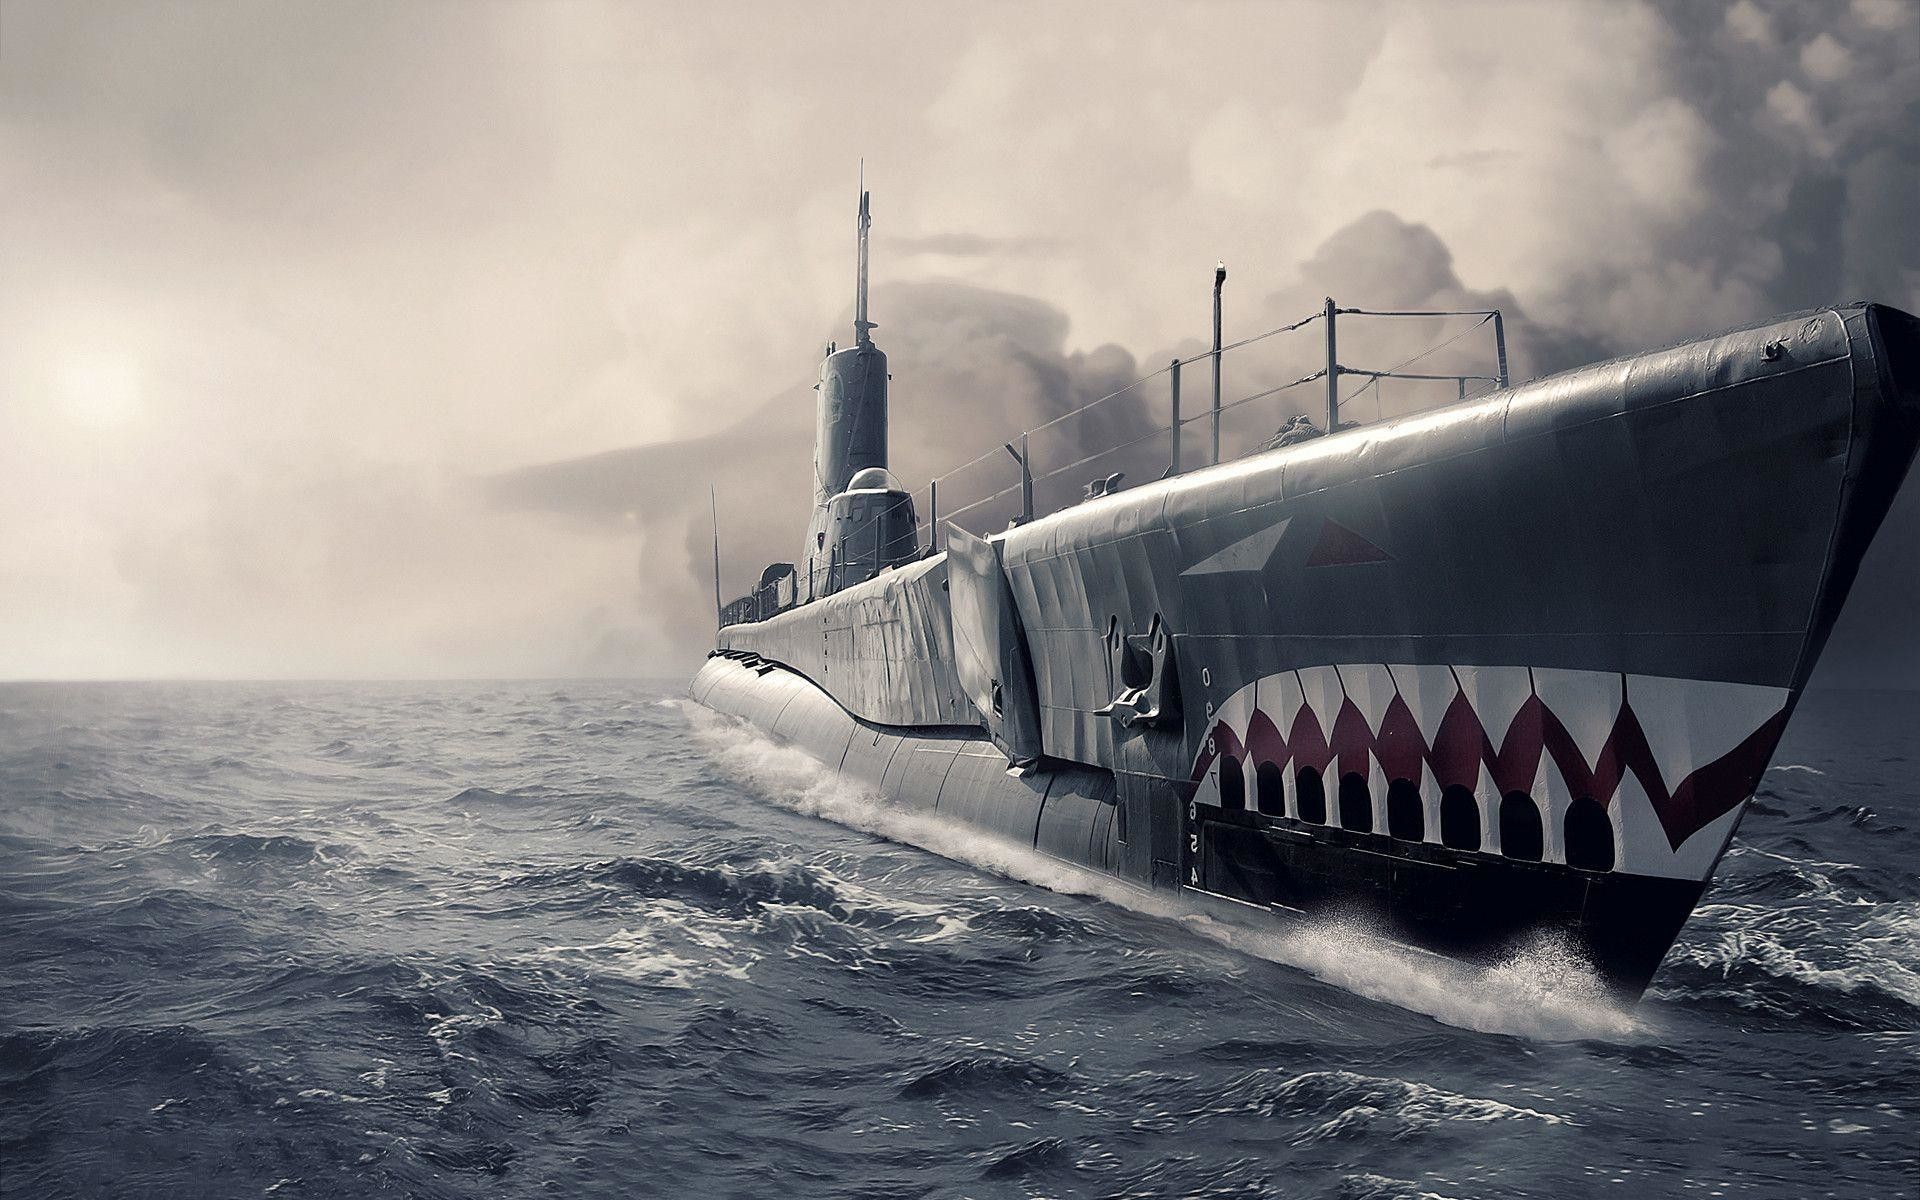  عکس شگفت آور و قشنگ از زیردریایی در آب با هوای مه آلود